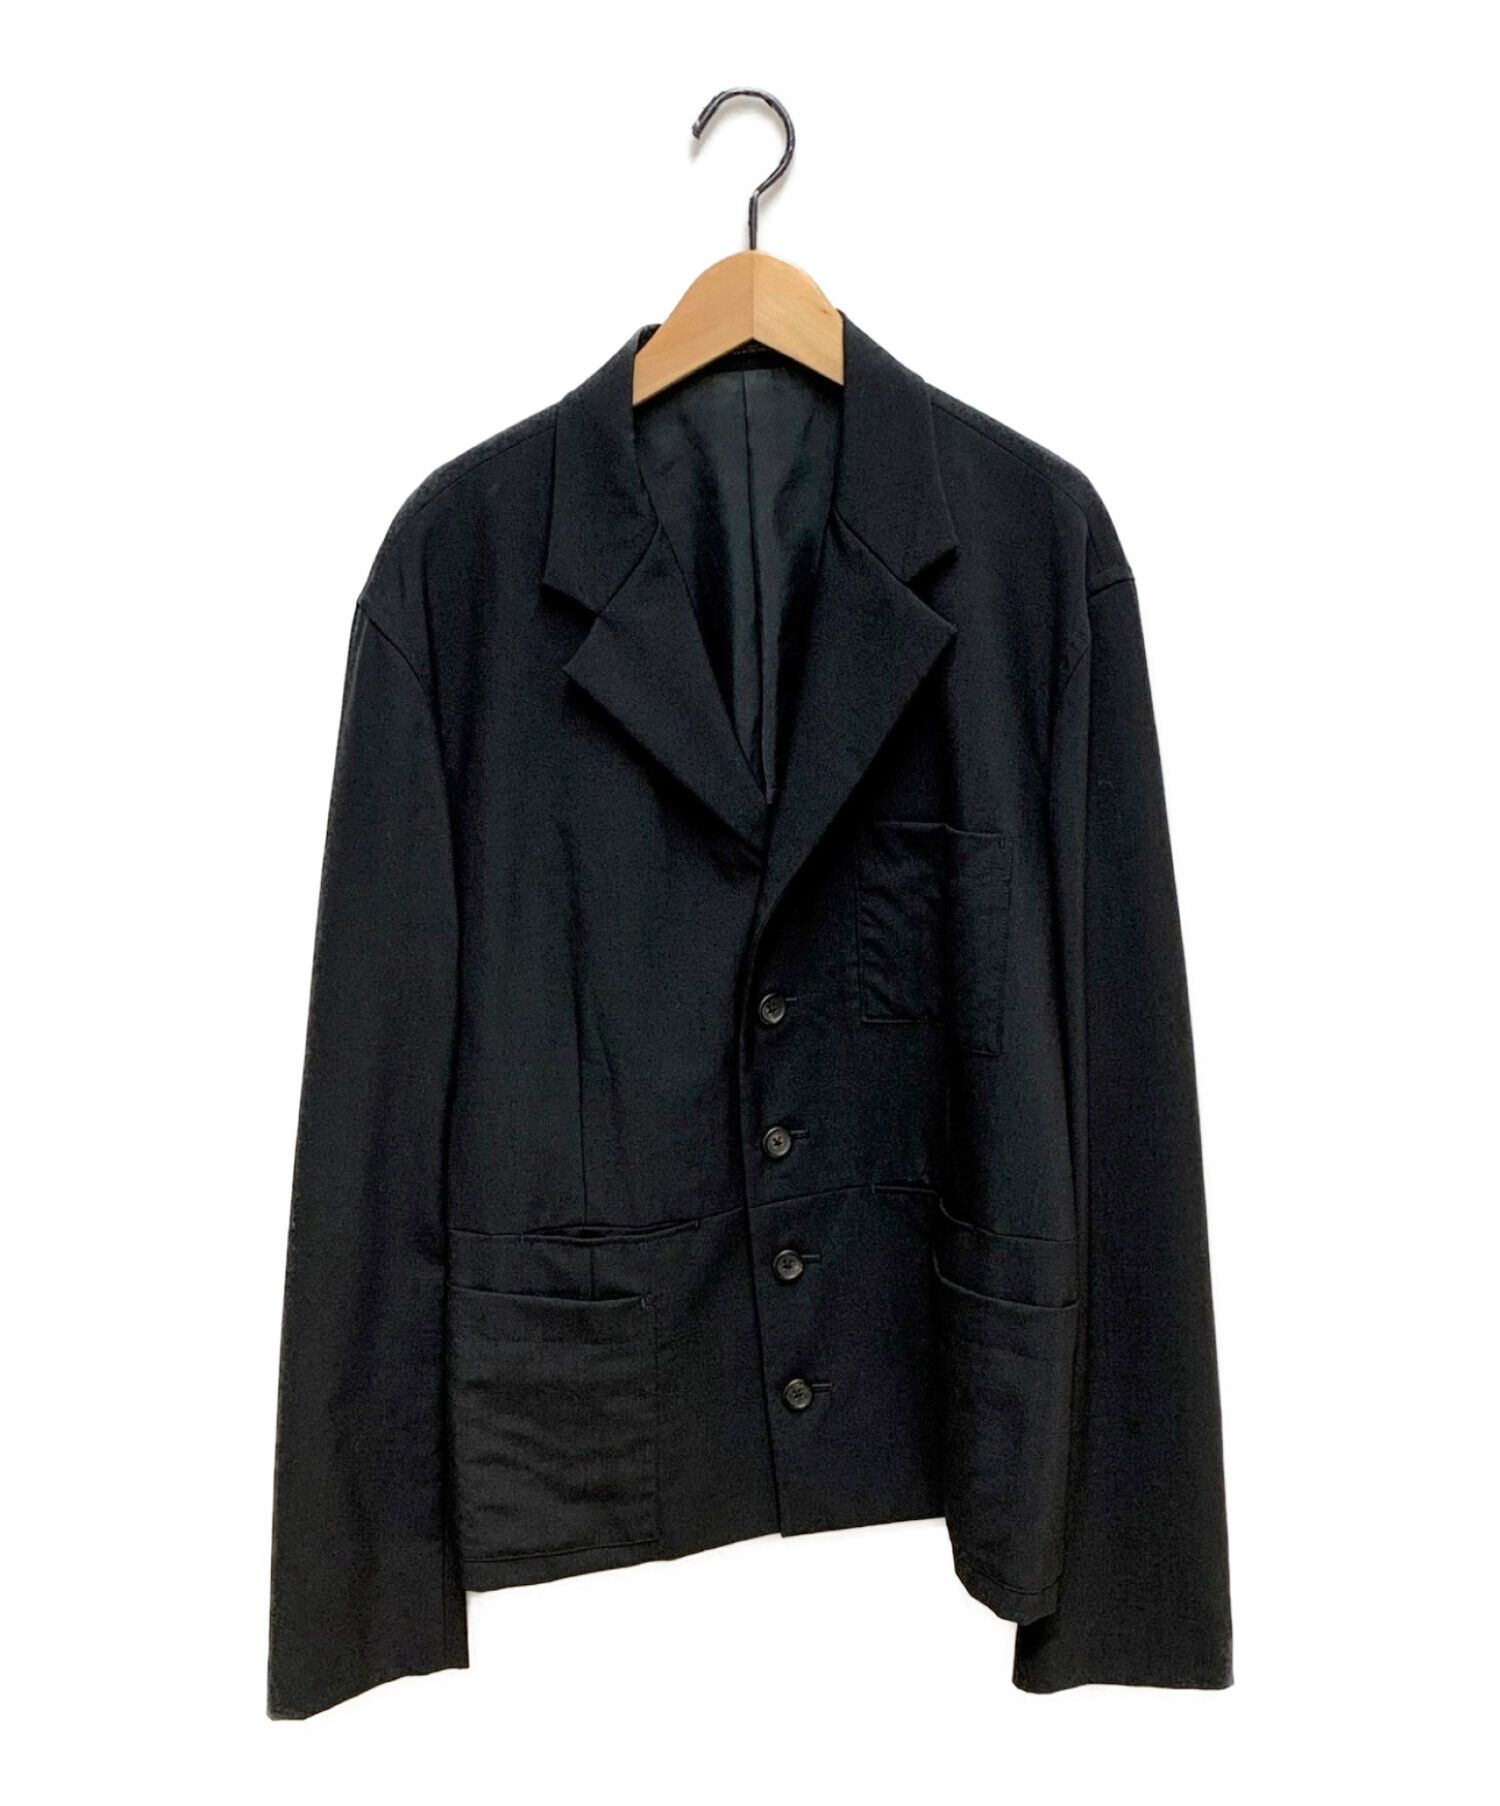 Yohji Yamamoto pour homme (ヨウジヤマモトプールオム) 93SS ポケットデザインロングジャケット ブラック サイズ